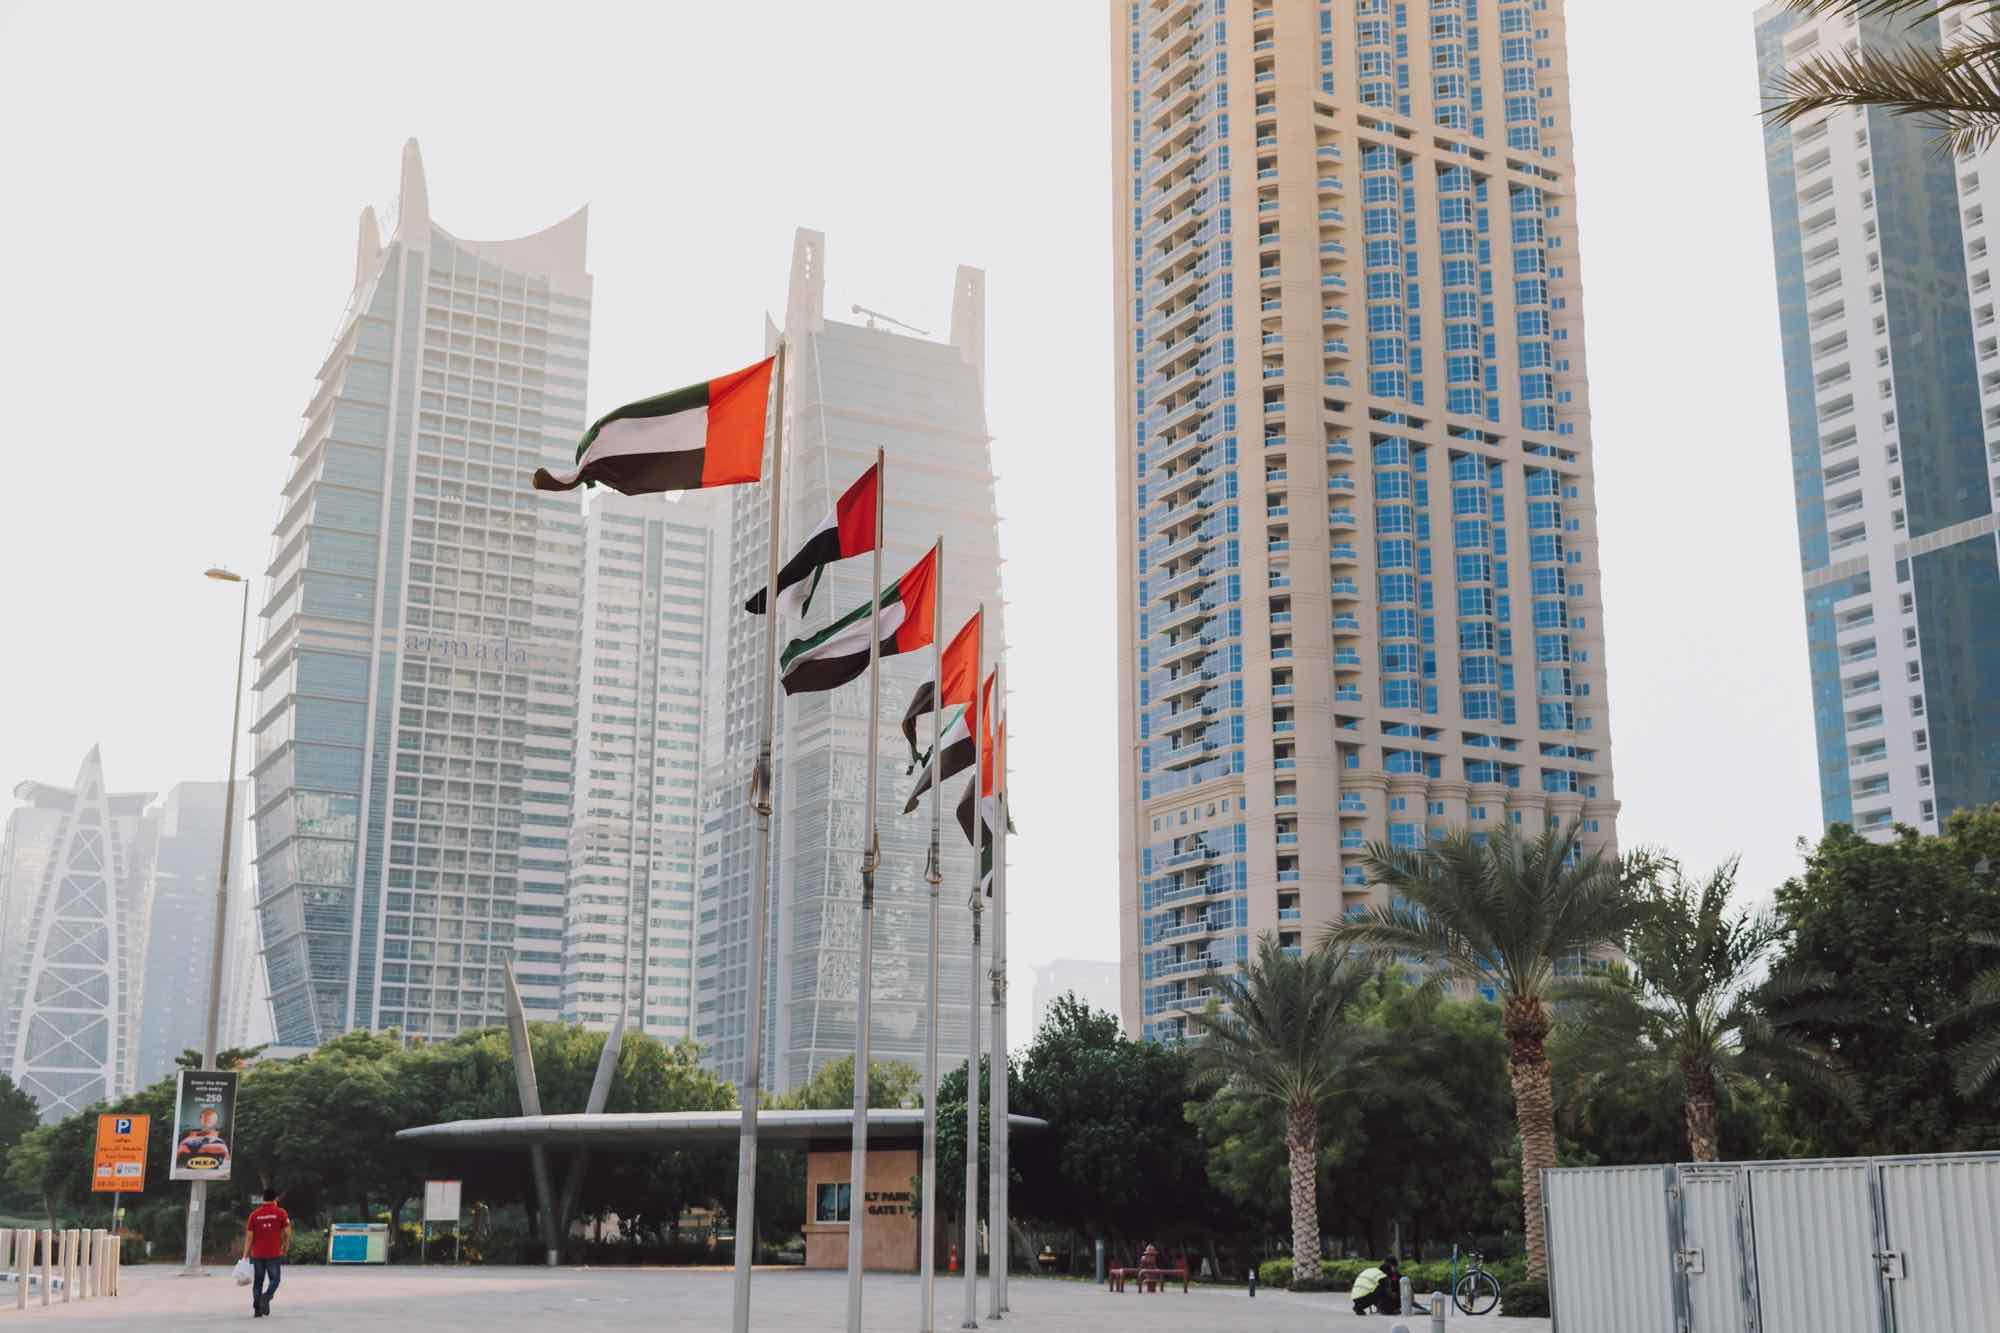 الإمارات تتصدر الدول العربية في مؤشر الاستعداد للتكنولوجيا المتقدمة